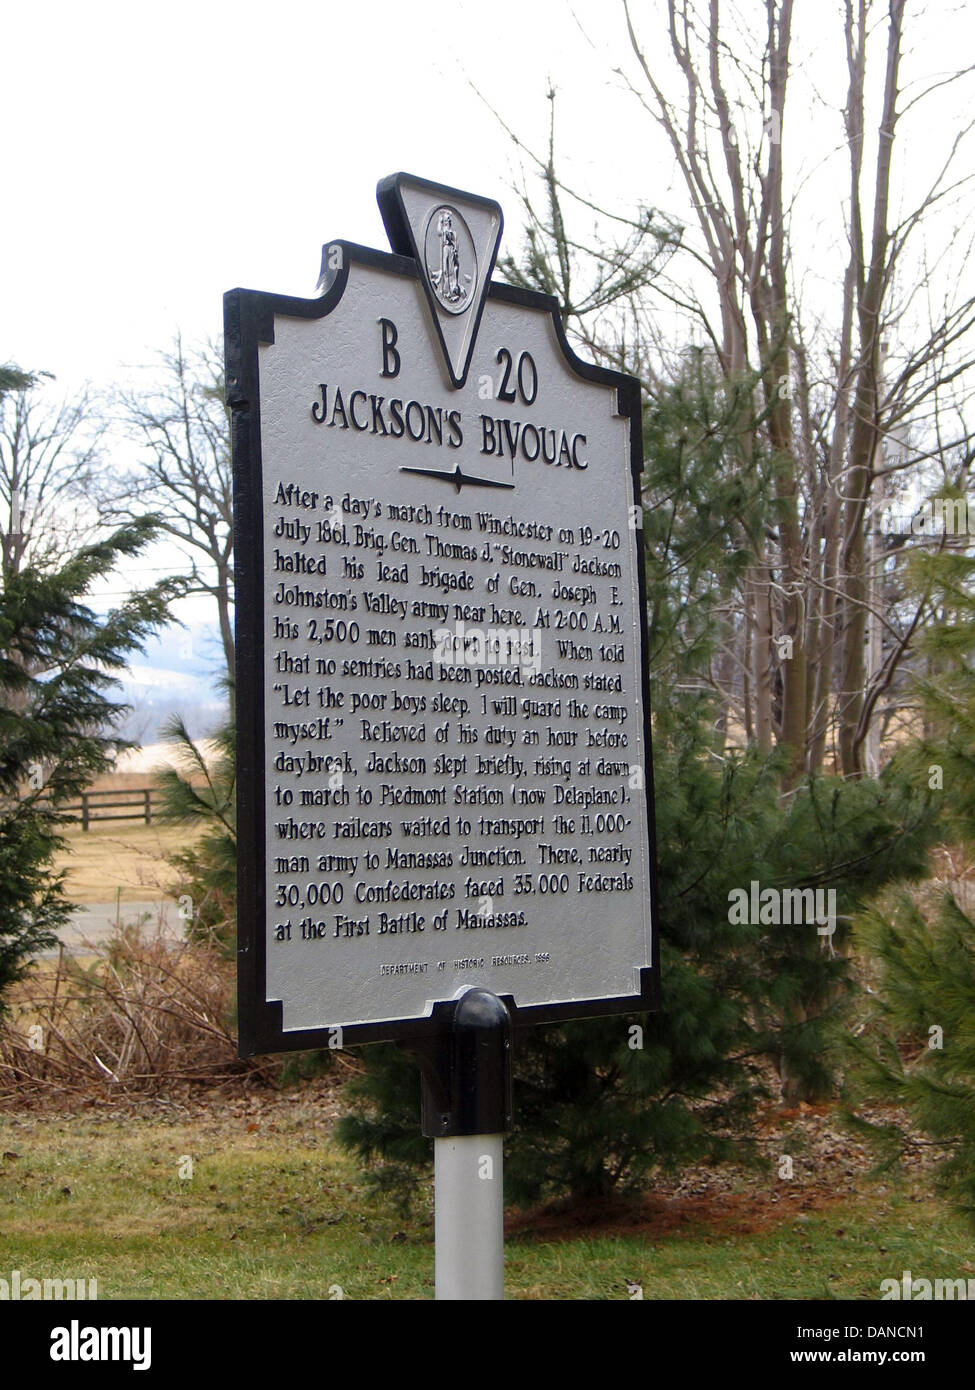 Jacksons Biwak nach einem Tagesmarsch von Winchester am 19. / 20. Juli 1861, Major General Thomas J. "Stonewall" Jackson hielt seine l Stockfoto